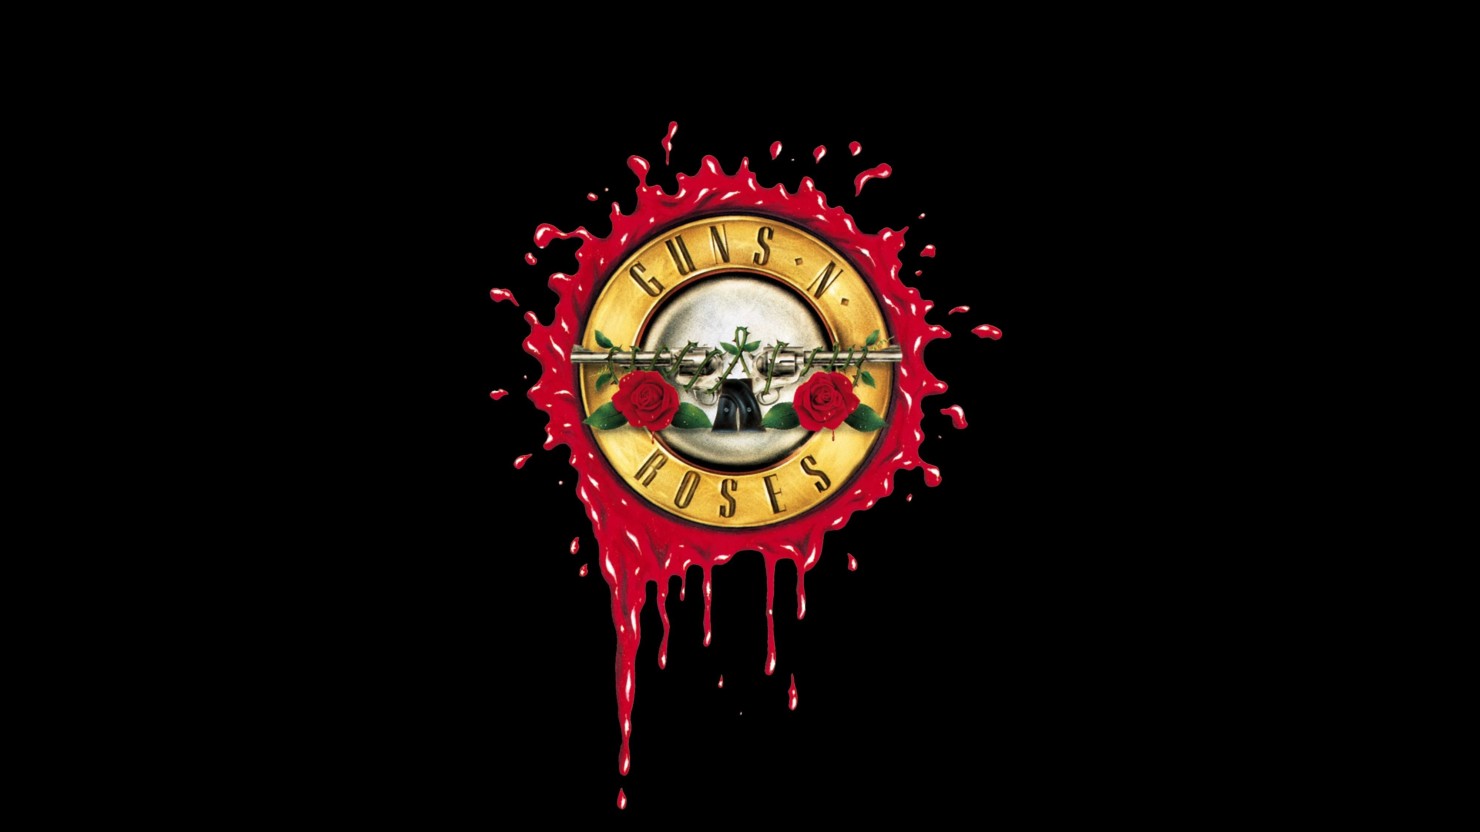 Gun N Roses Logo Vector